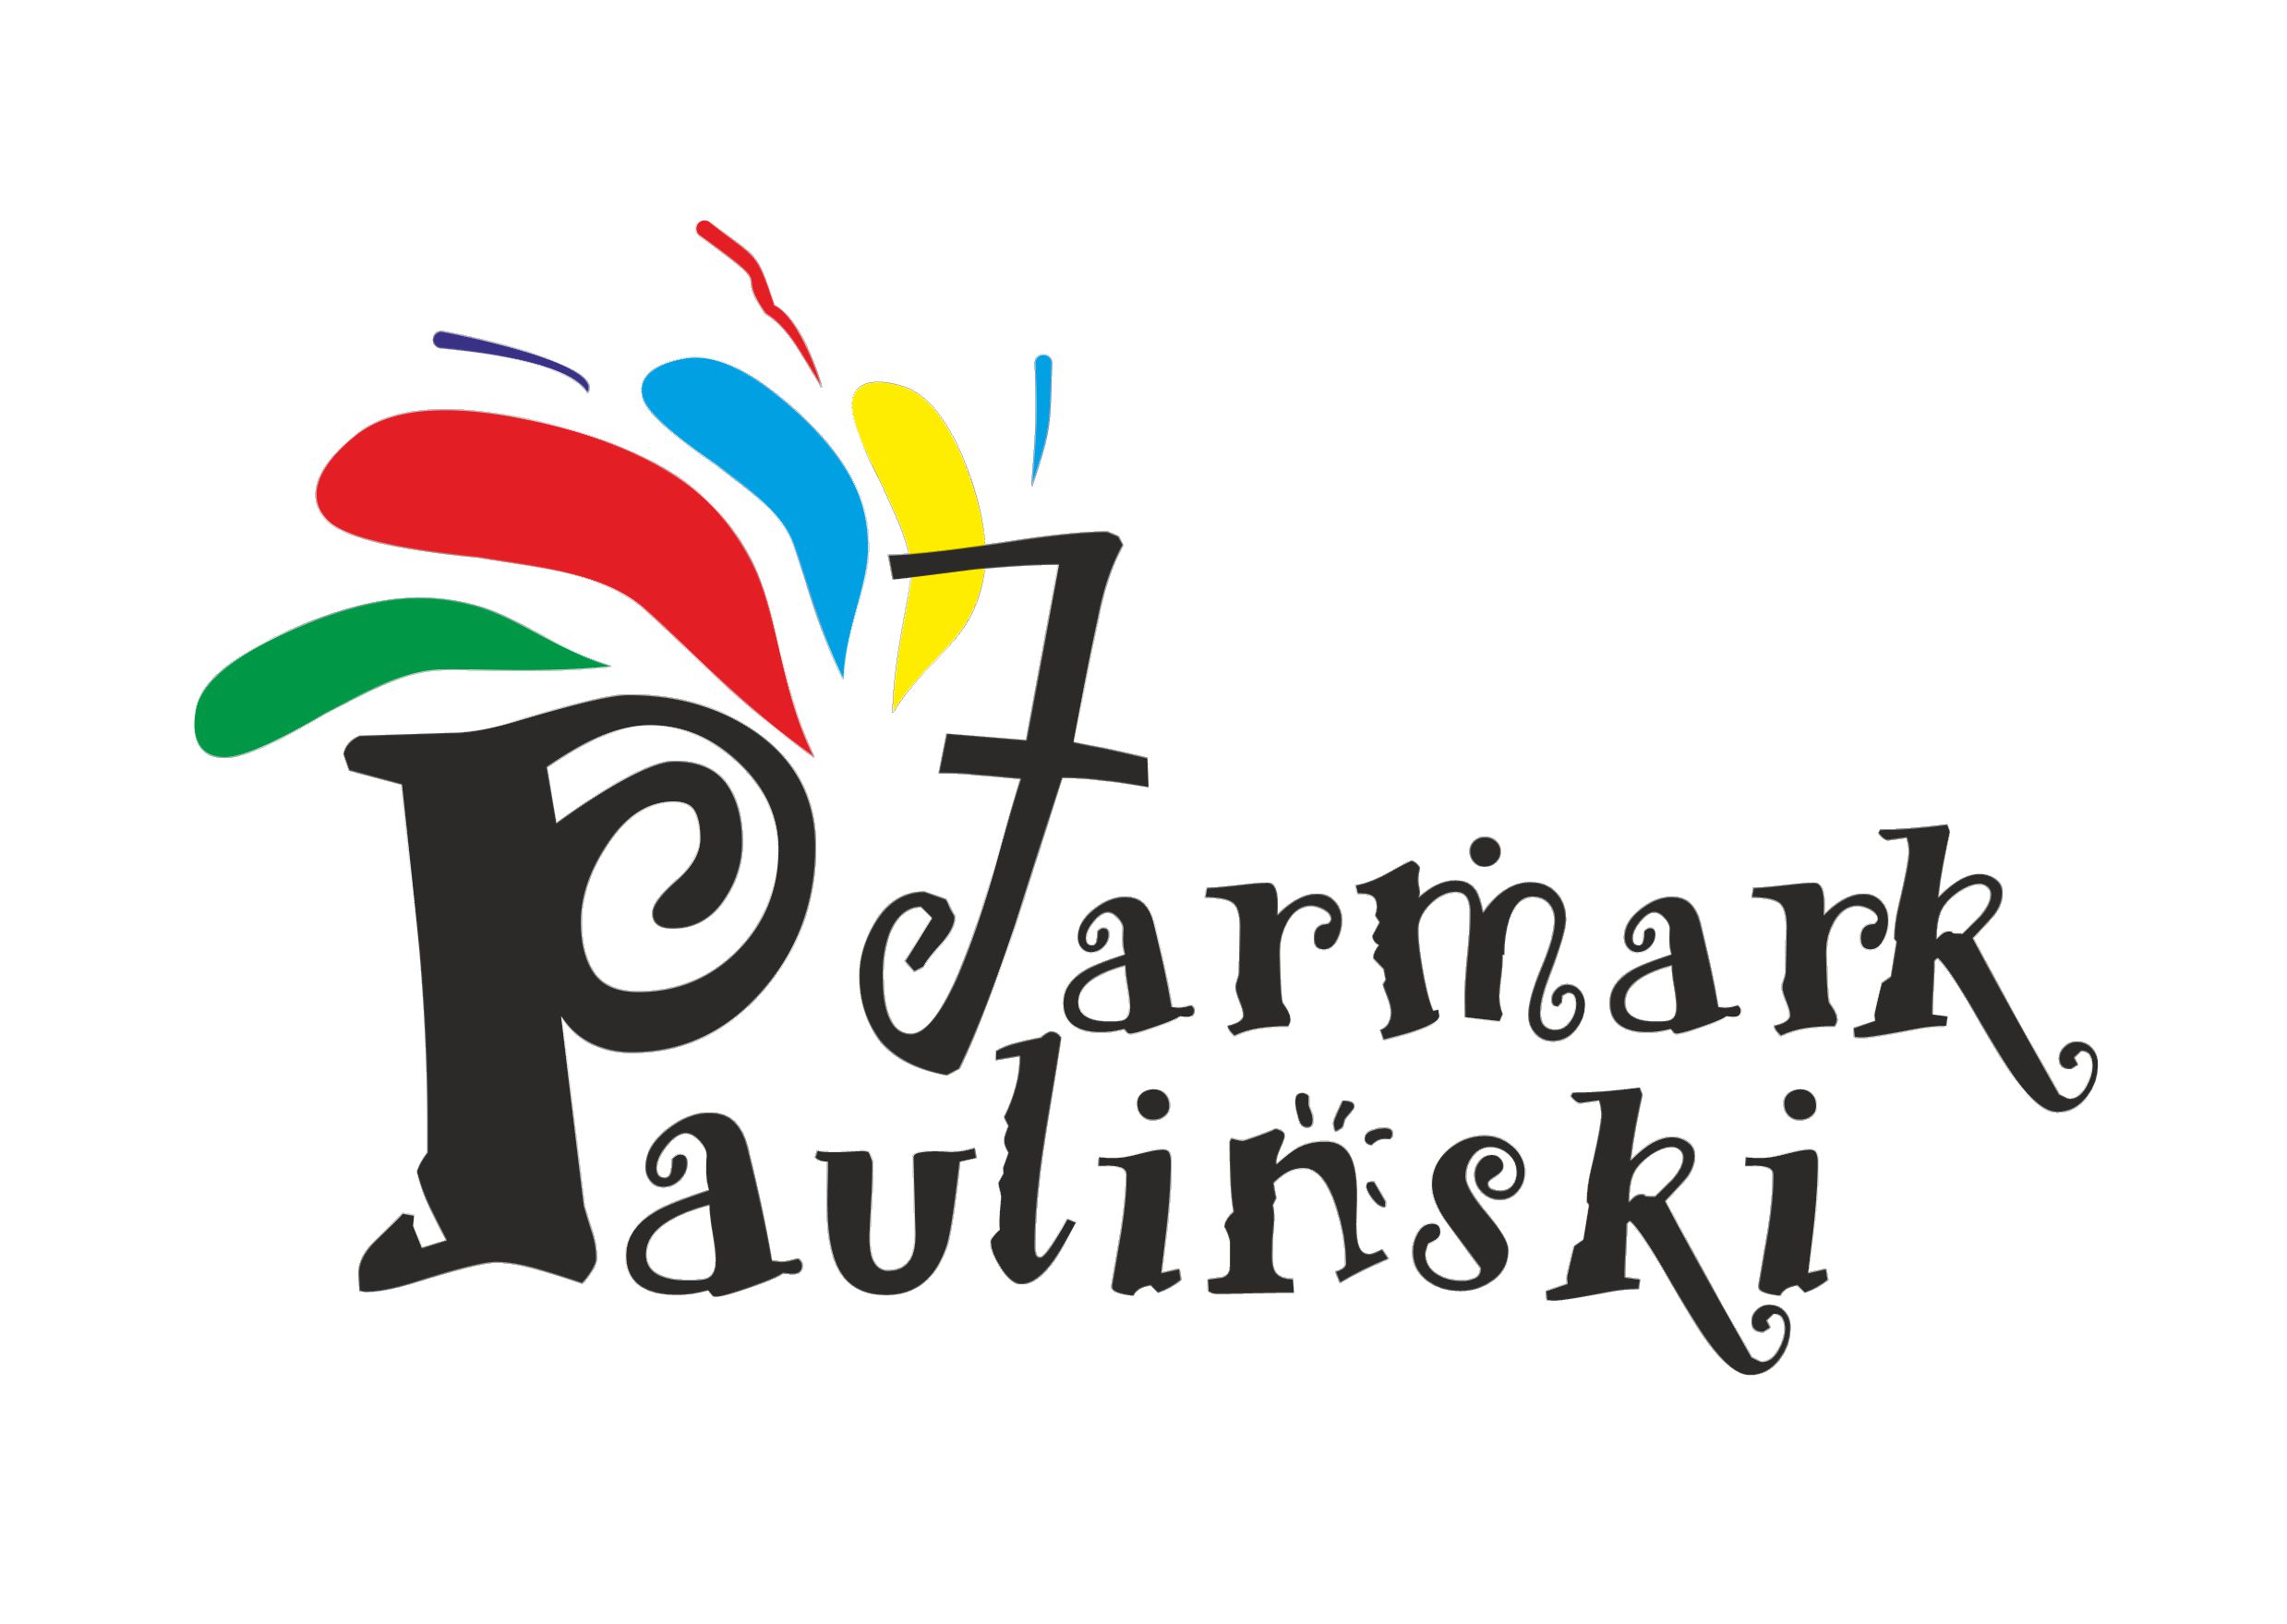 jarmark_logo.jpg (165 KB)